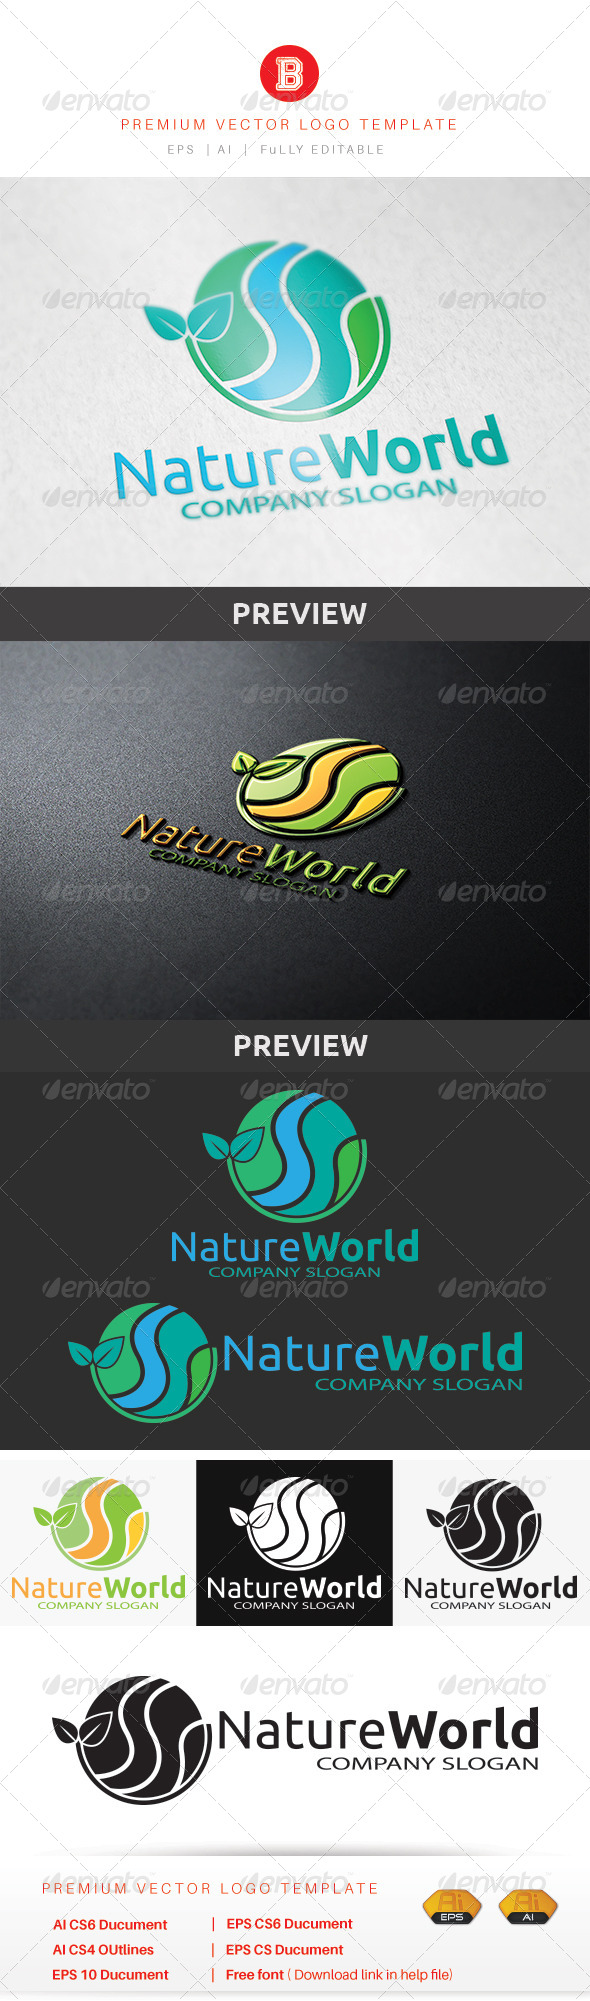 Nature World